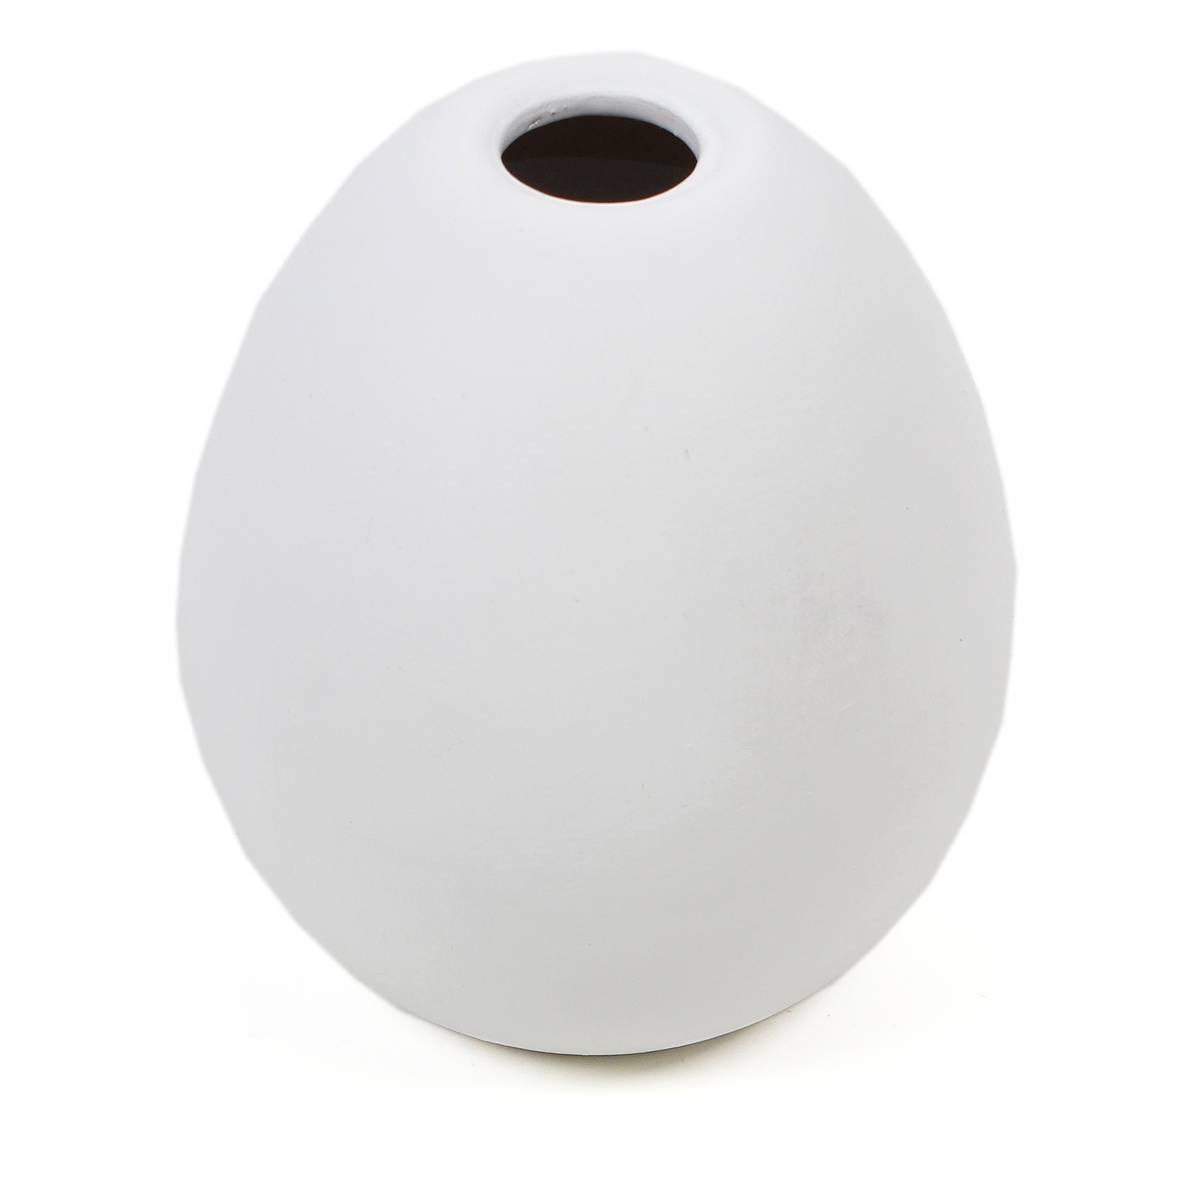 11 Trendy Unglazed White Ceramic Vase 2024 free download unglazed white ceramic vase of unglazed ceramic bud vase 10cm x 9cm hobbycraft with 615043 1000 1 800